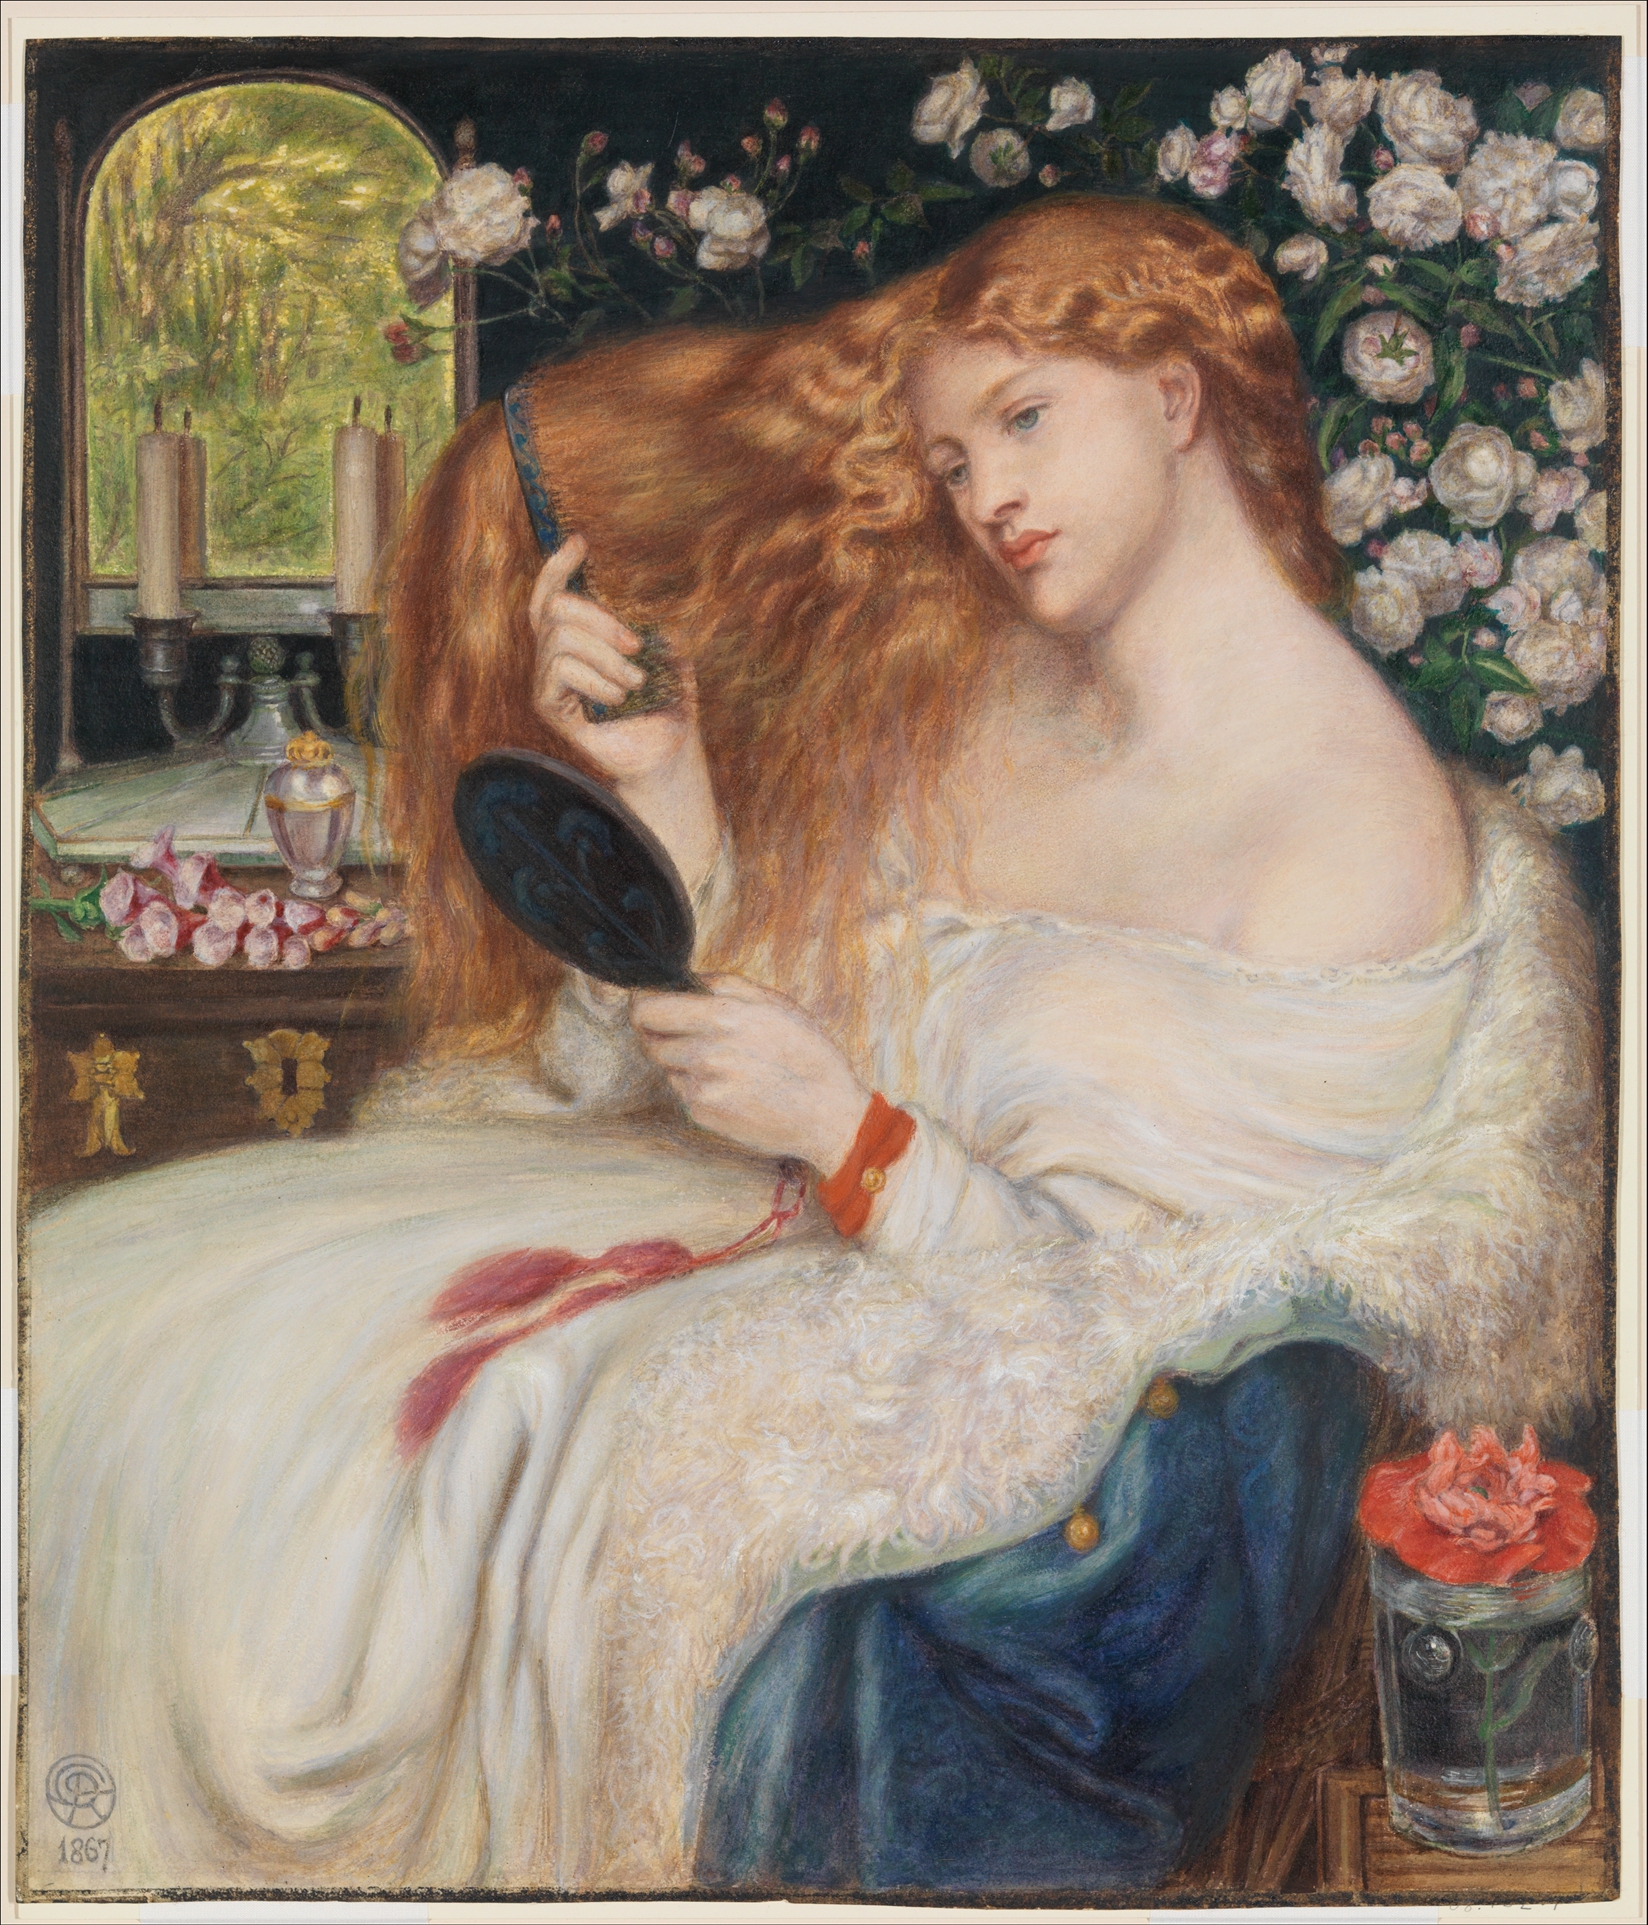 佳人莉莉絲 by Dante Gabriel Rossetti - 1867 年 - 51.3 x 44 釐米 